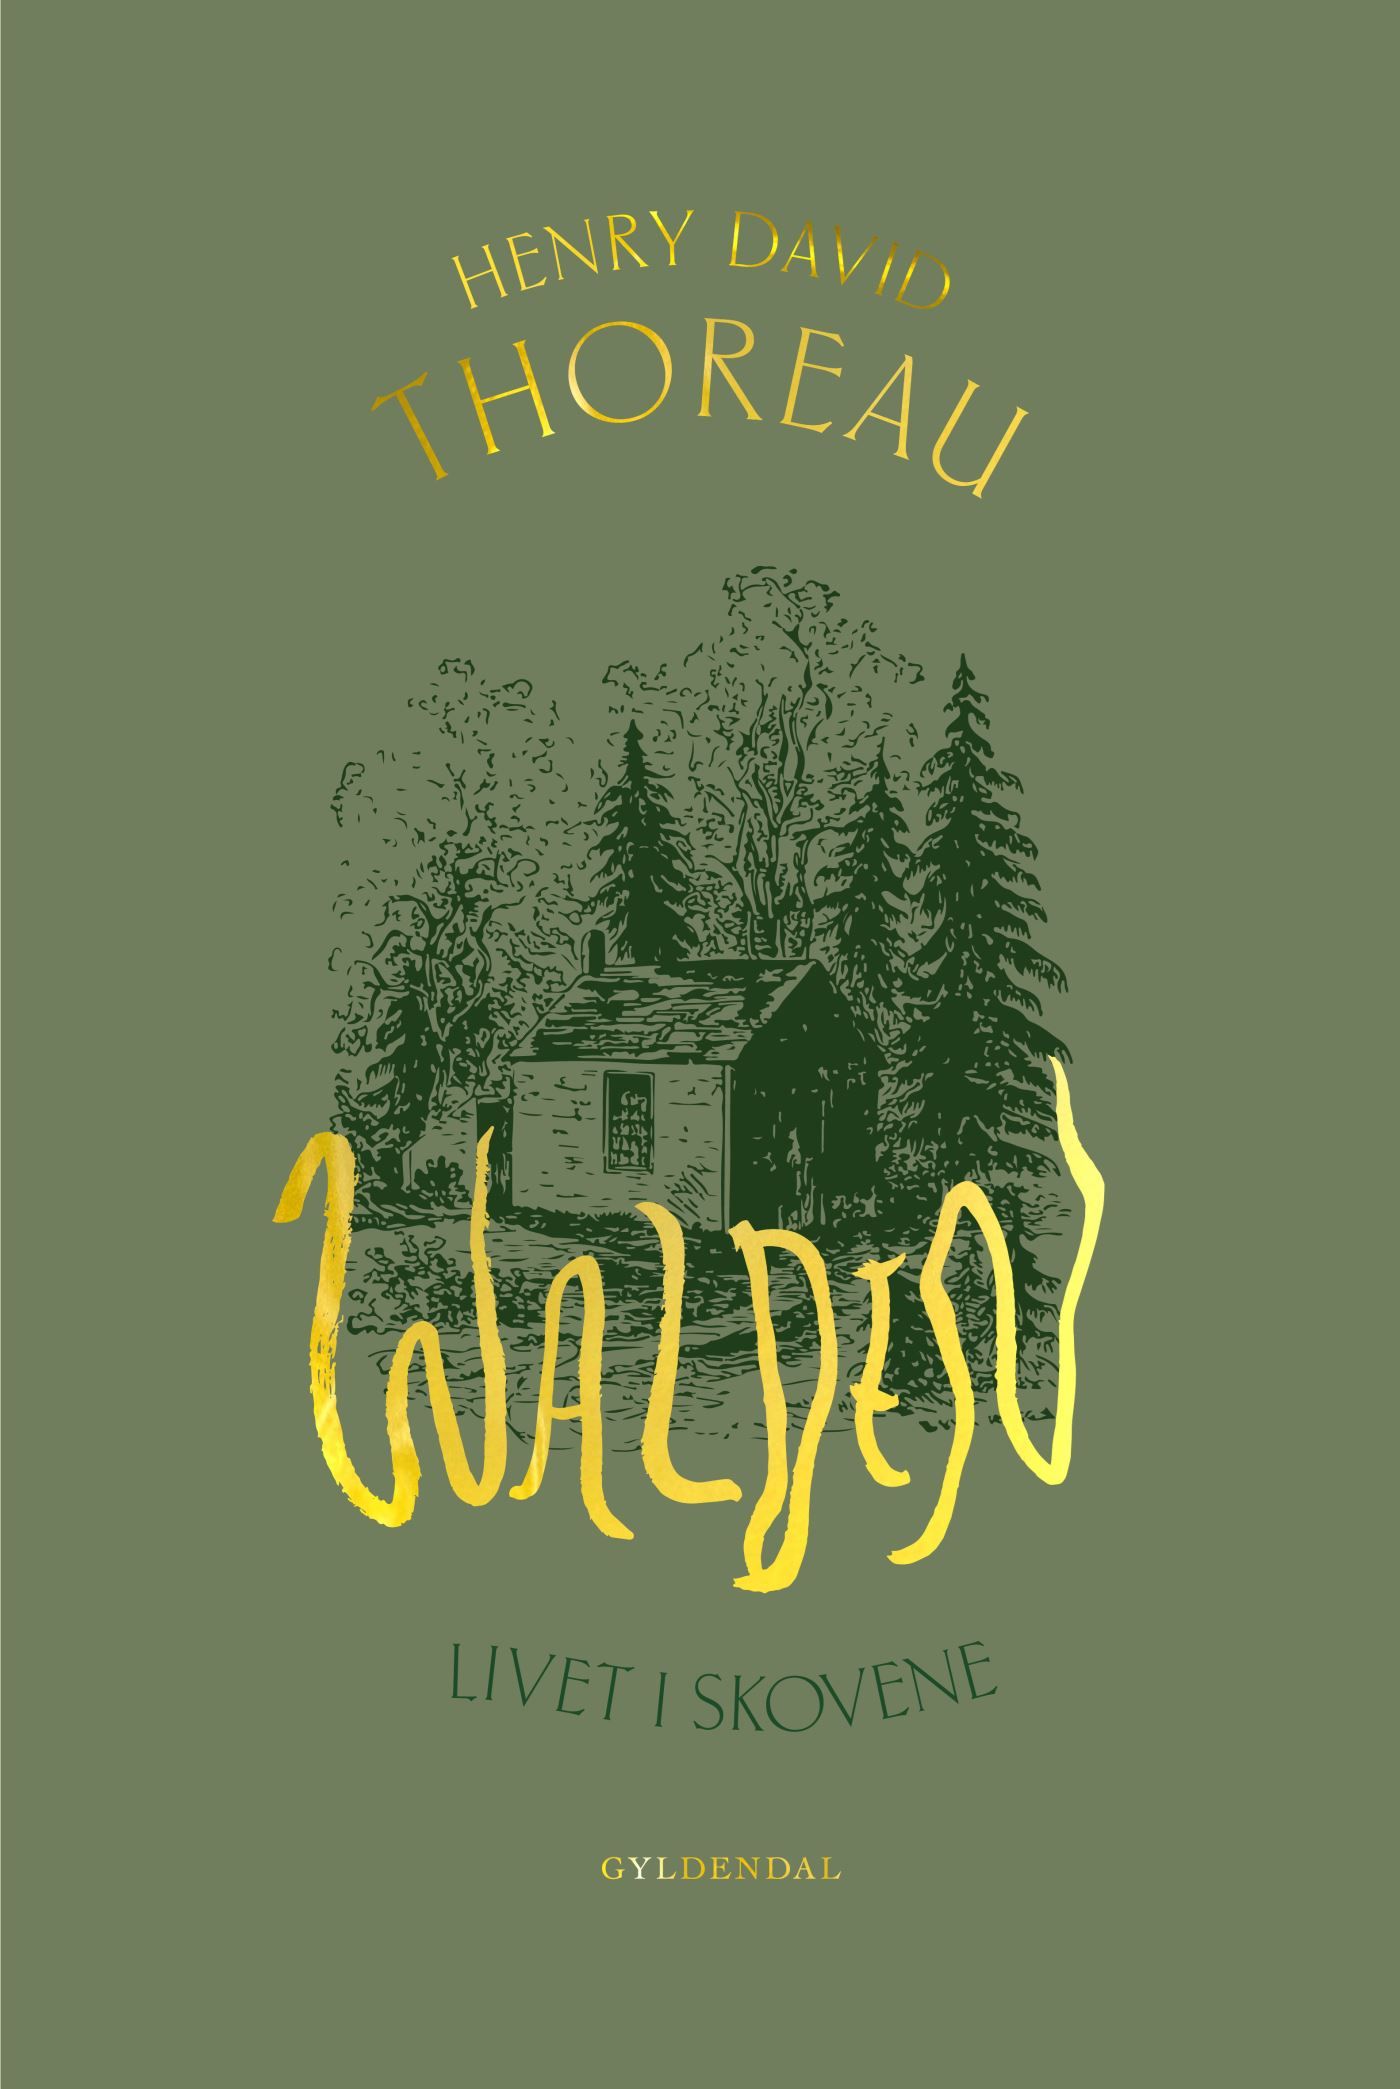 Walden, e-bok av Henry David Thoreau